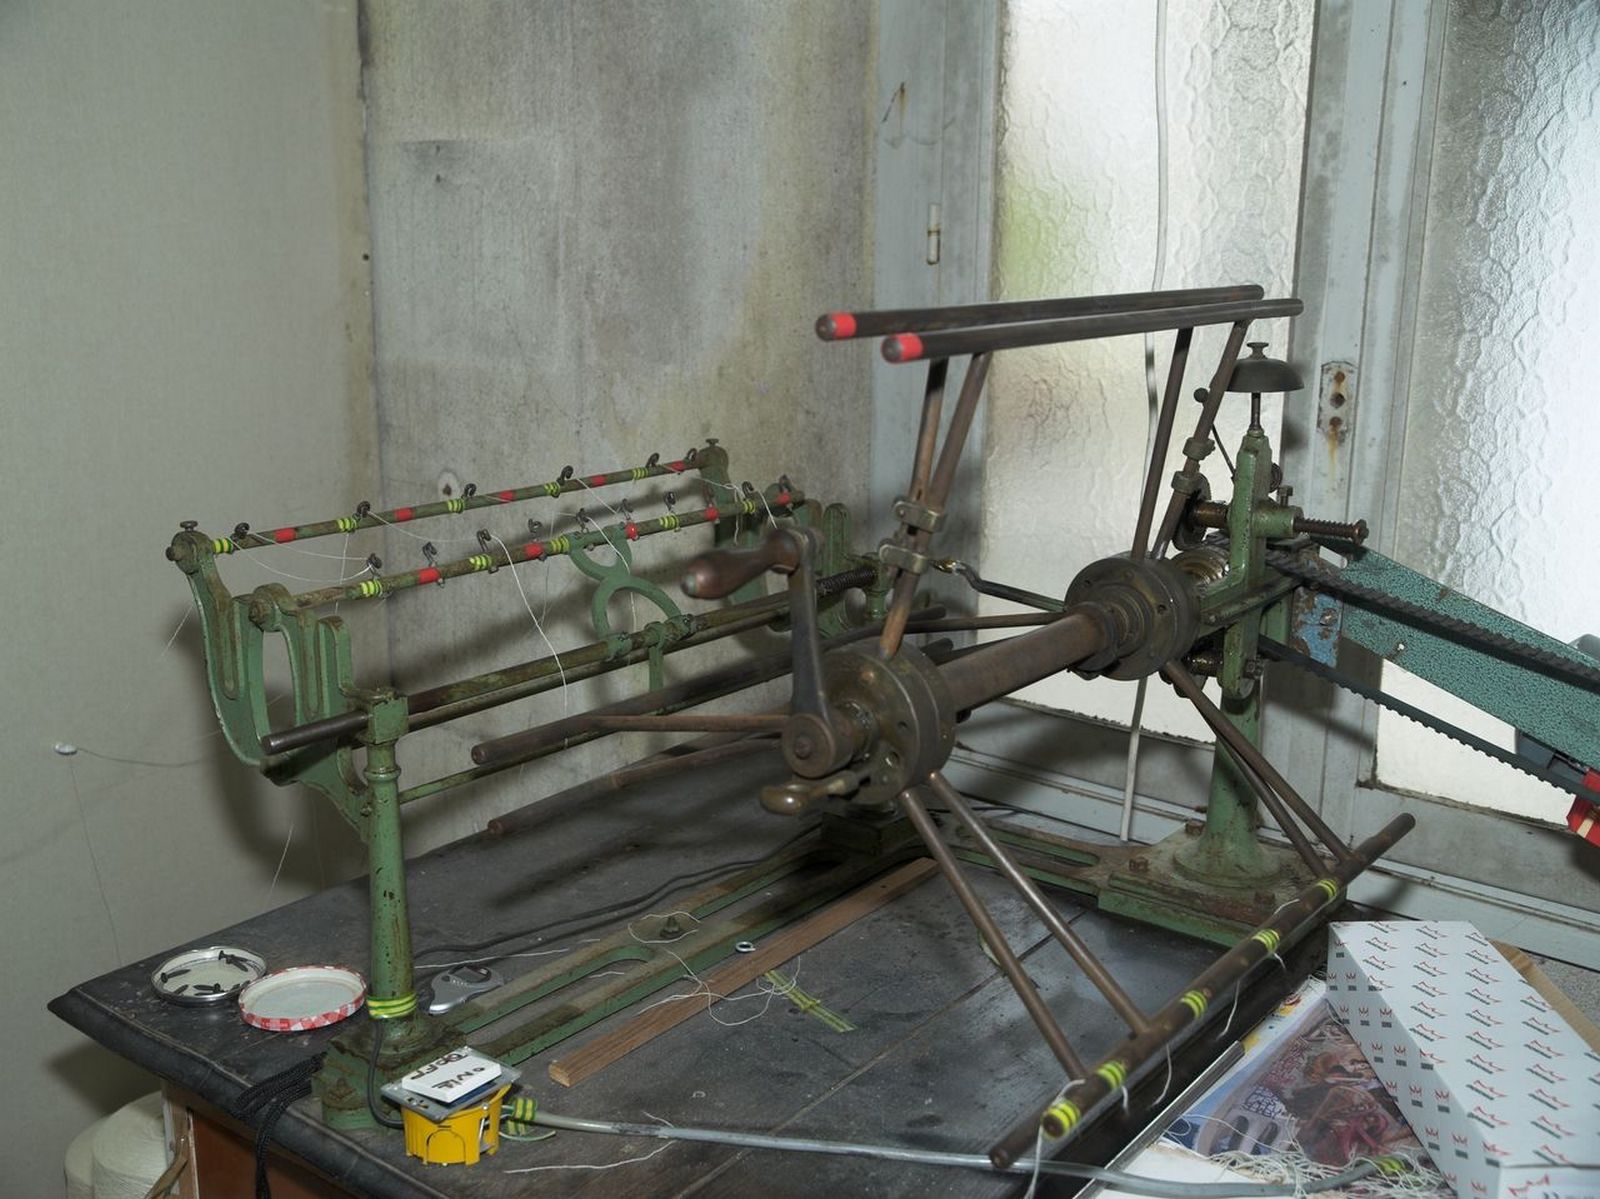 Détail de la machine permettant au teinturier de mettre en écheveaux les bobines de laine ou de soie, pour les préparer à la teinture. 